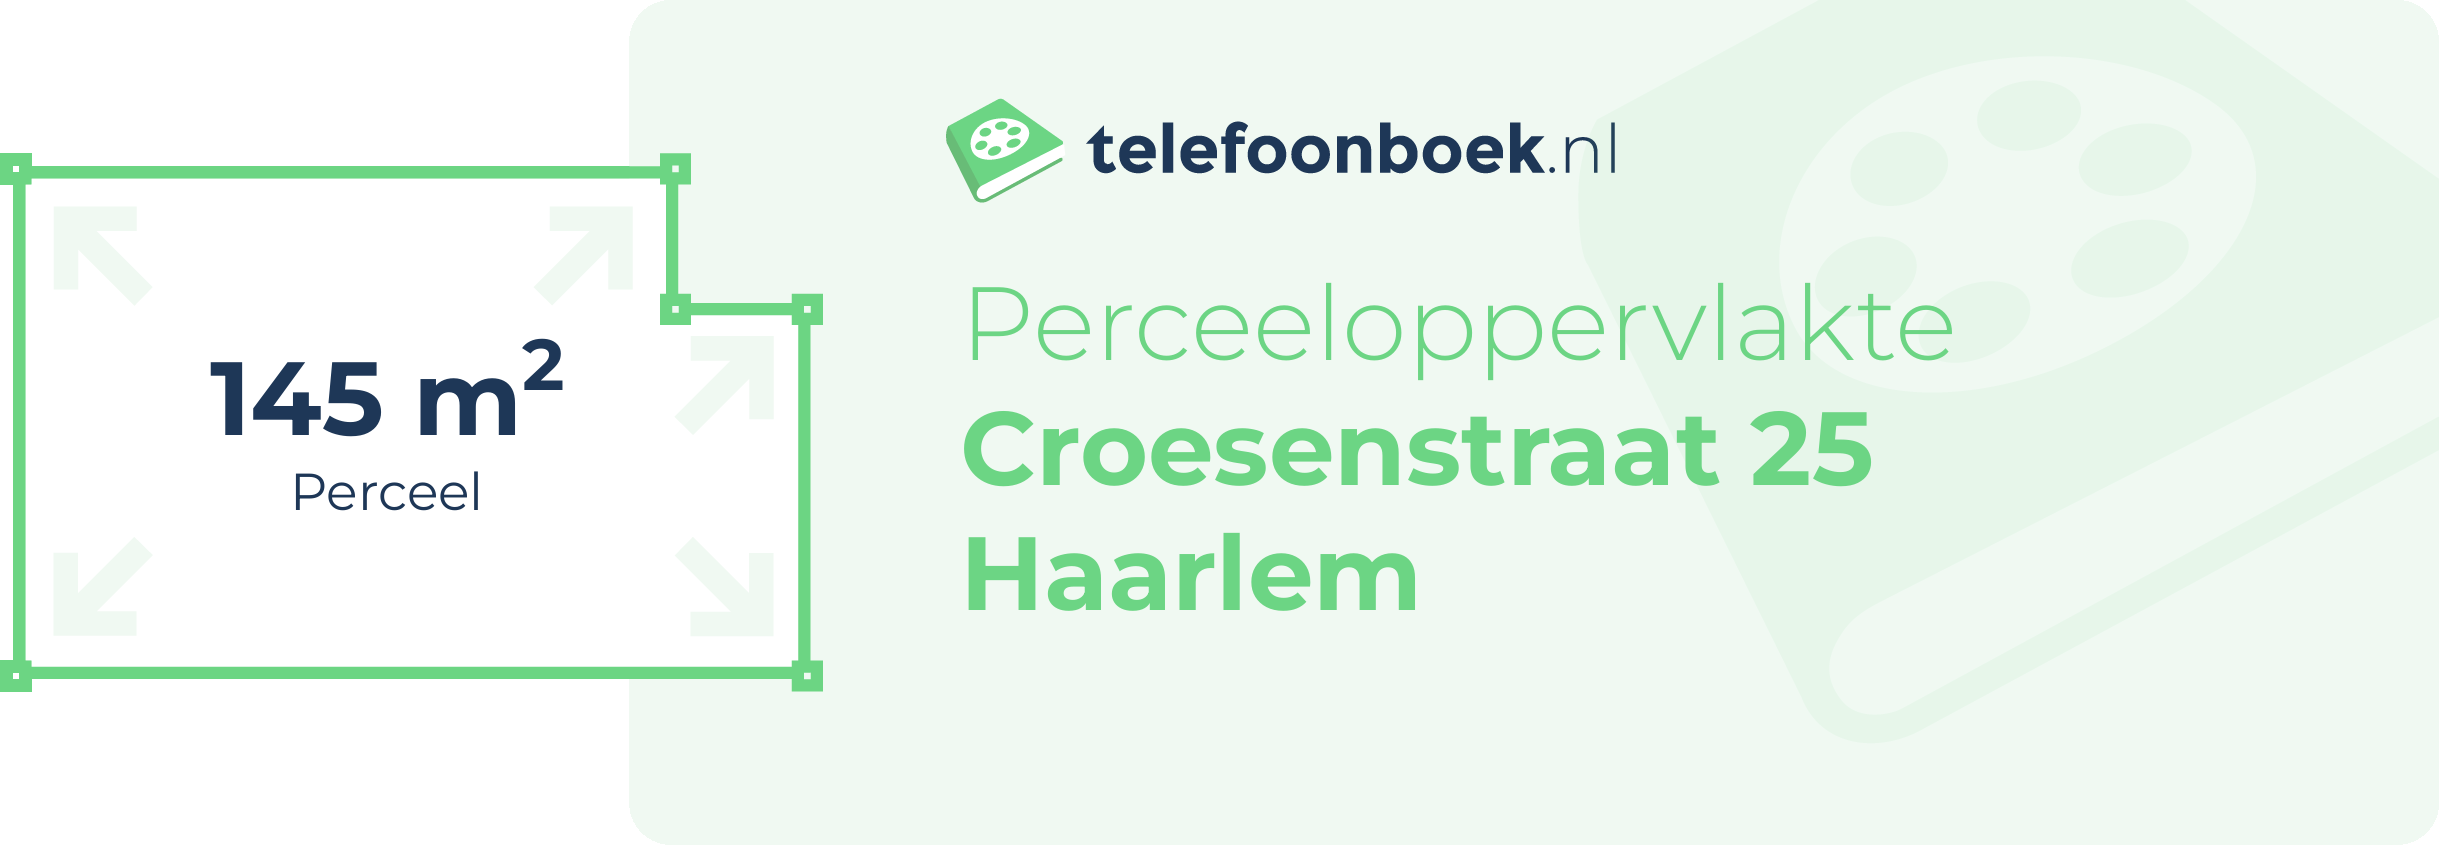 Perceeloppervlakte Croesenstraat 25 Haarlem